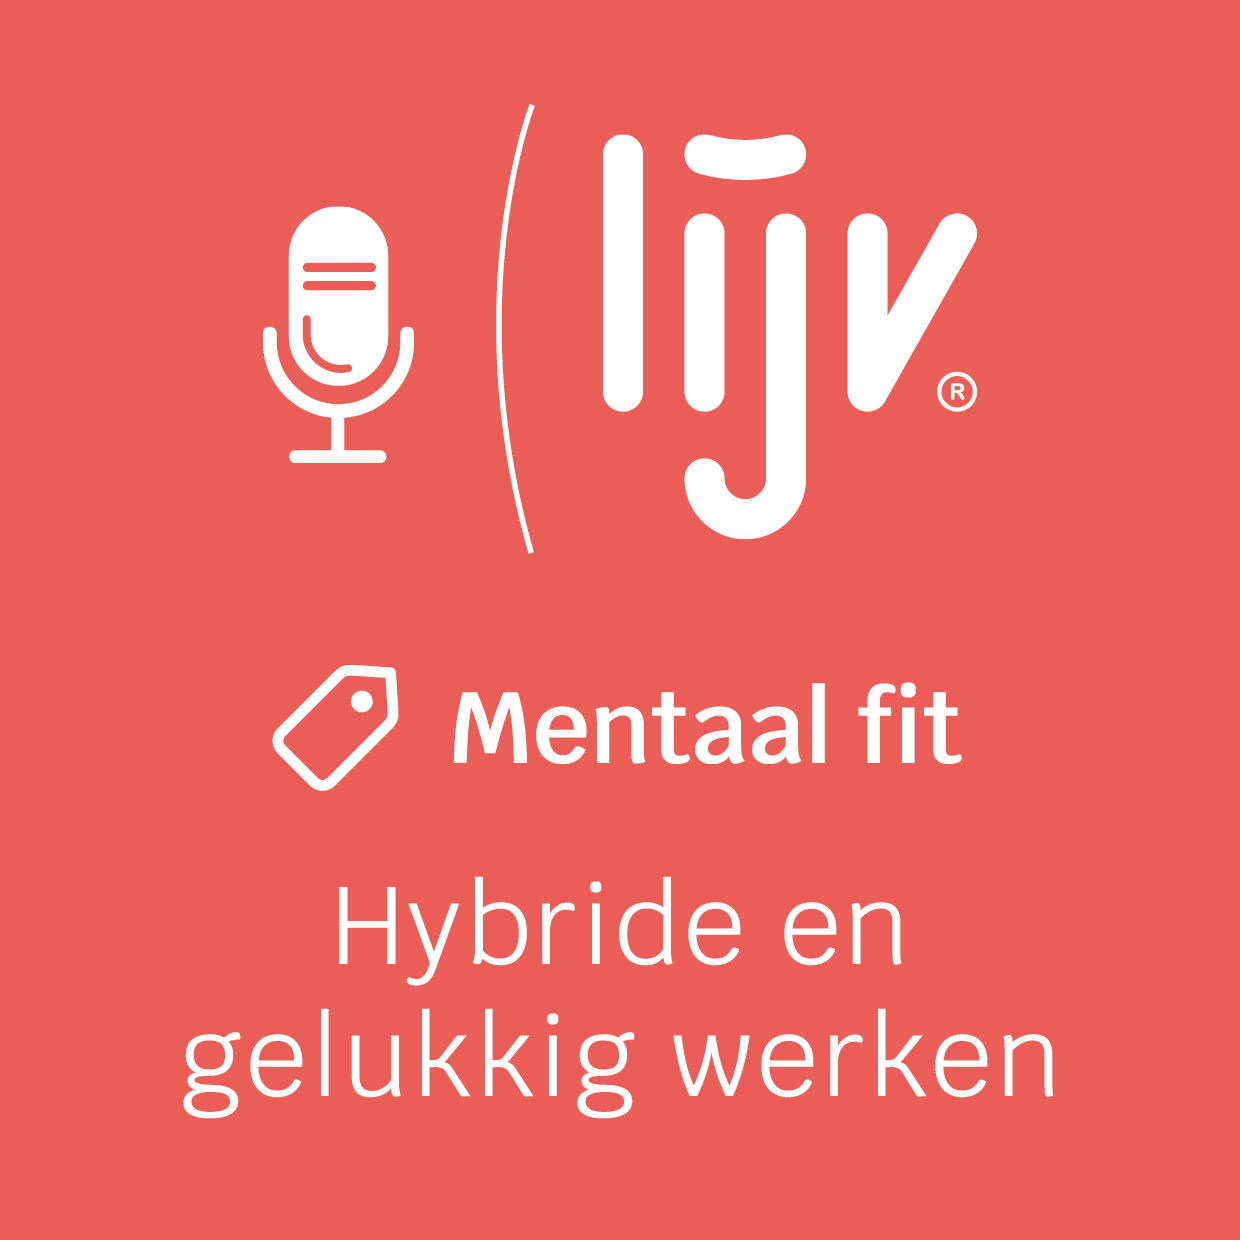 LIJV podcast – En ze werkten nog lang hybride en gelukkig